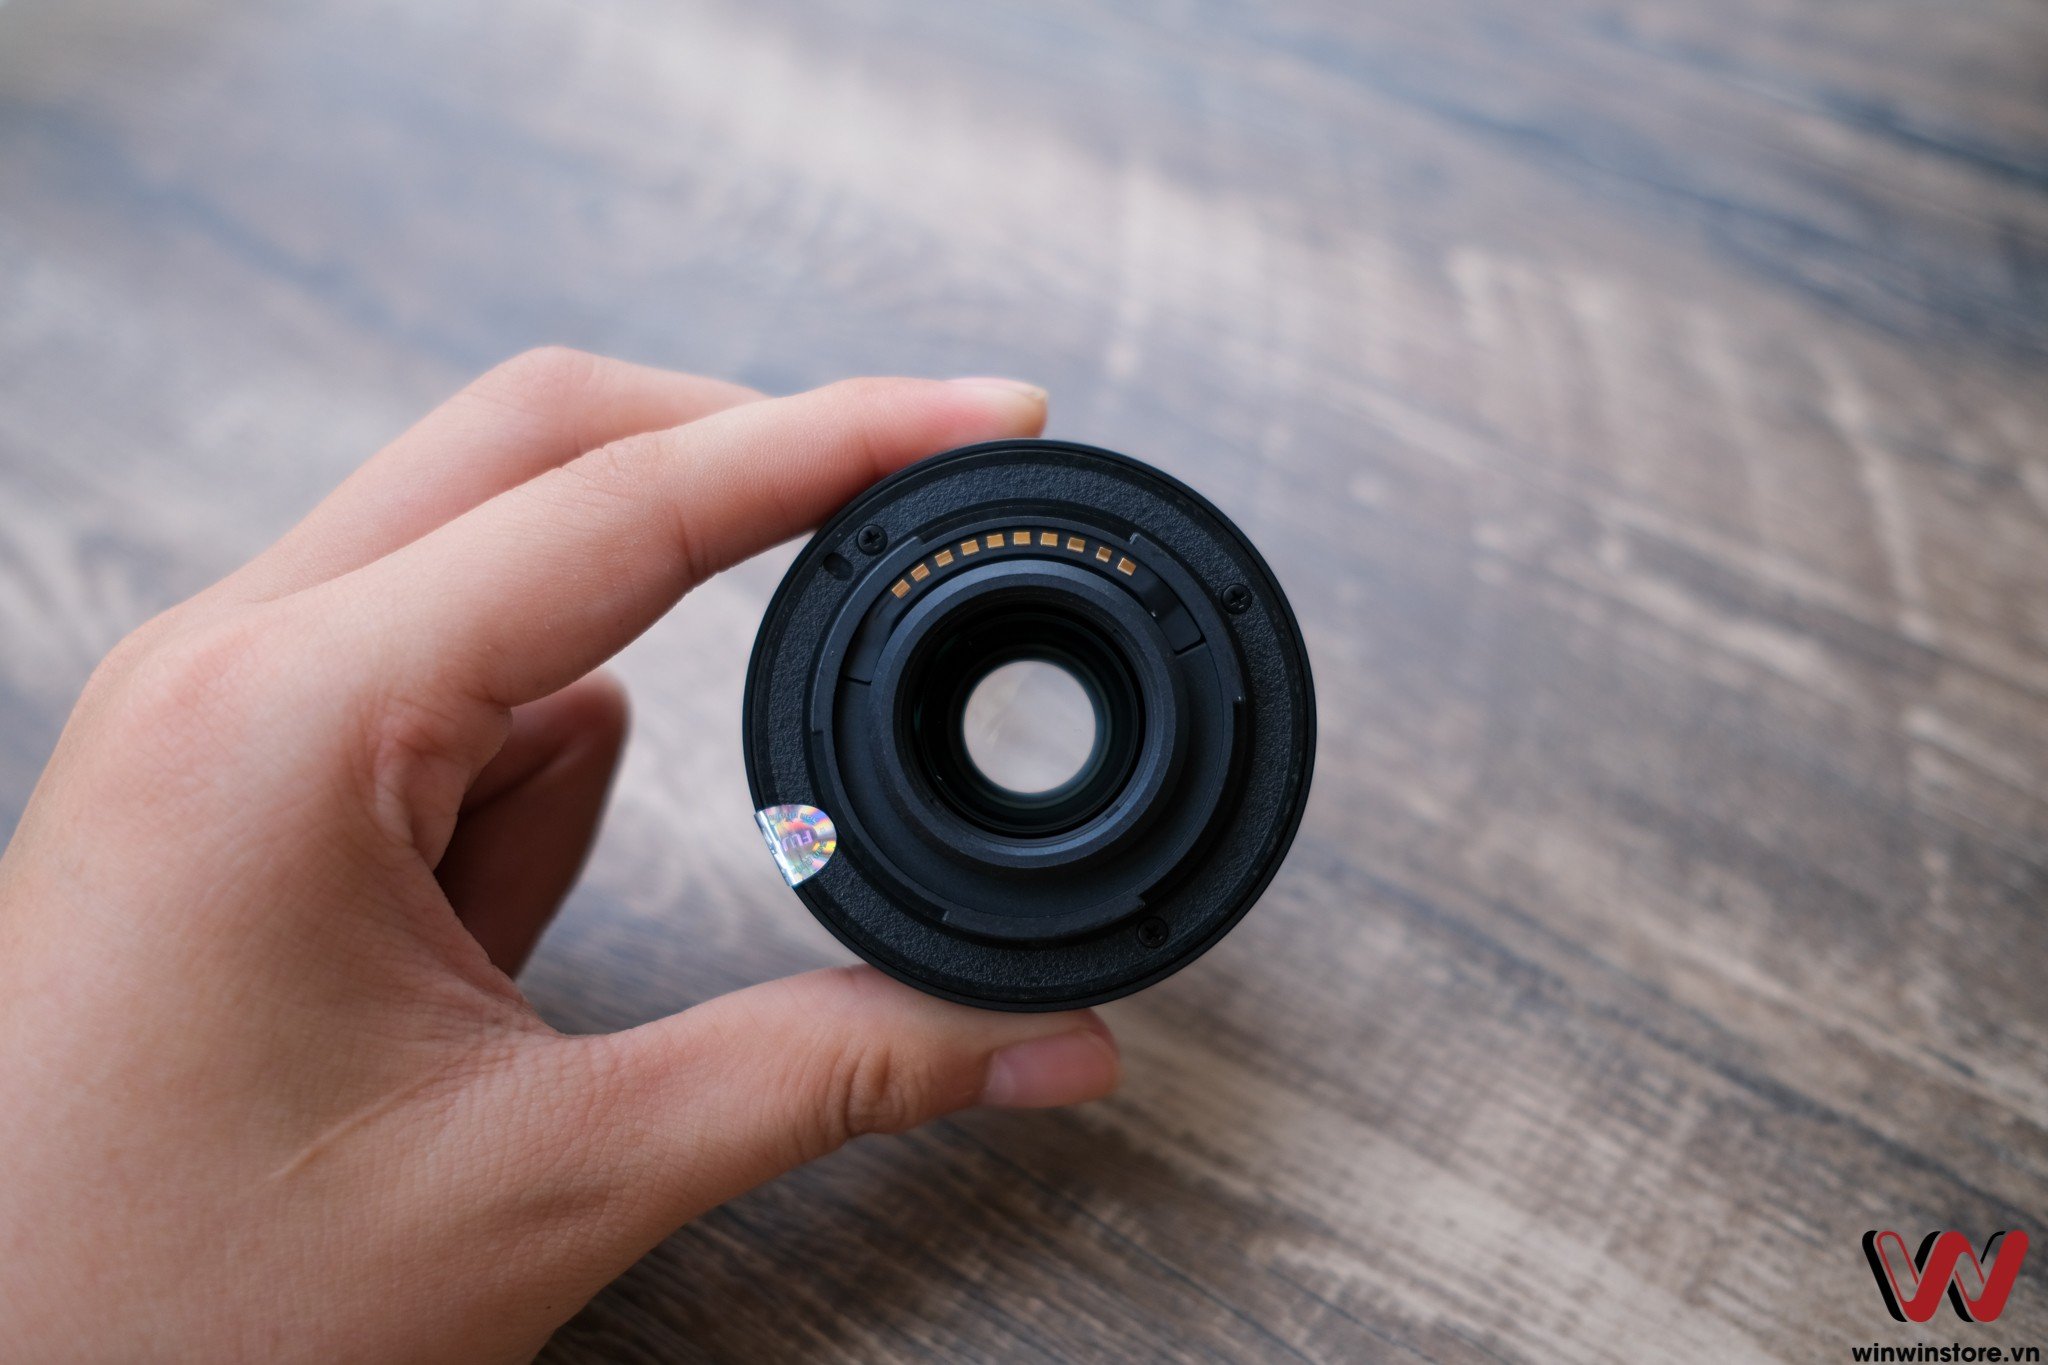 Bộ ảnh Fujifilm XC 35mm F2, lens chân dung giá rẻ dành cho người mới